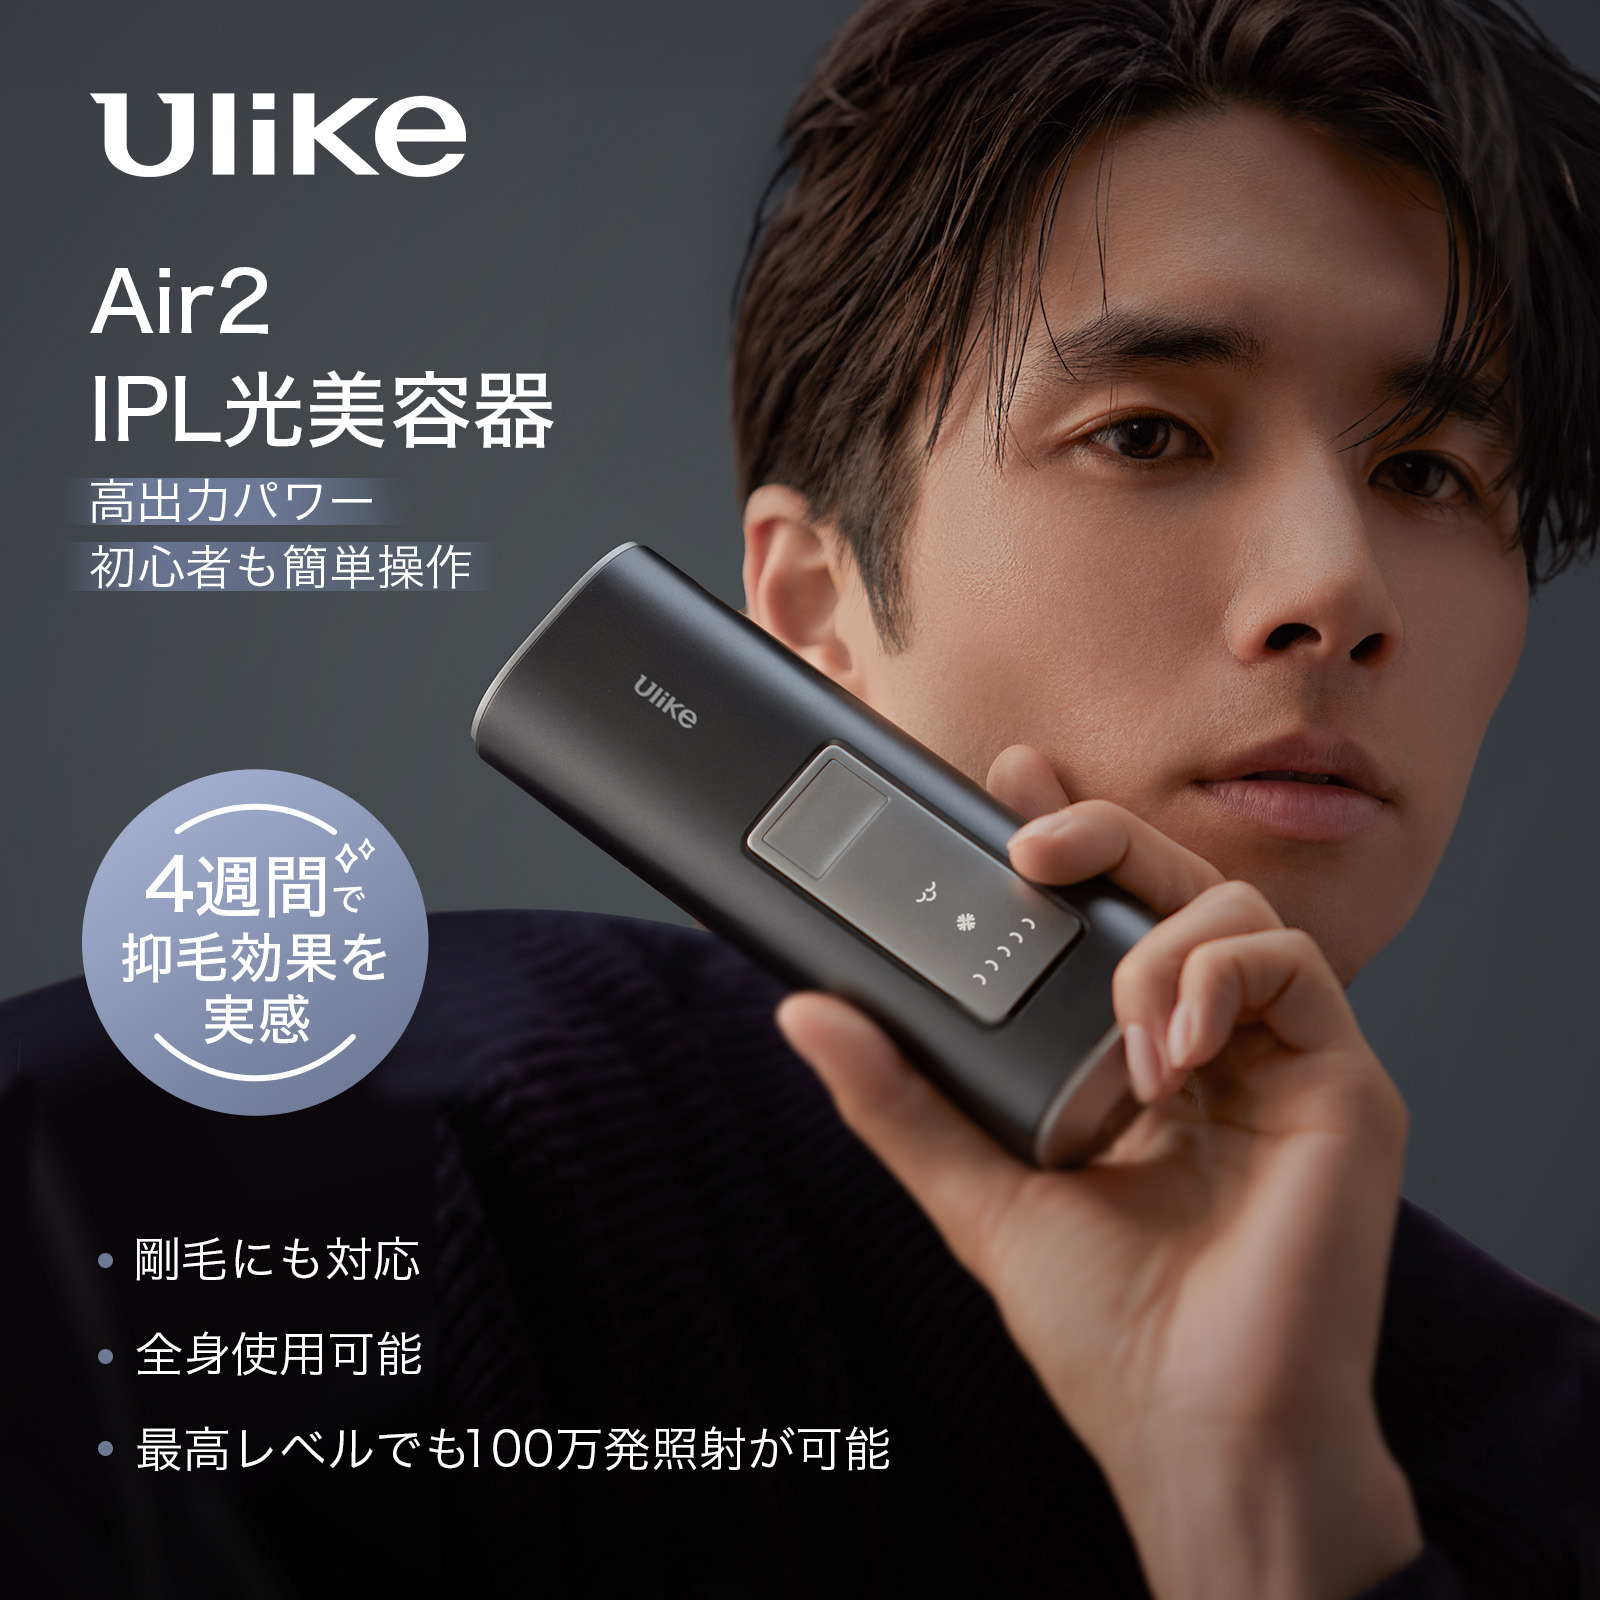 Ulike Air2 トータルケアセット 2年保証 サロン級光美容器 ハイパワー メンズ向け UI04S